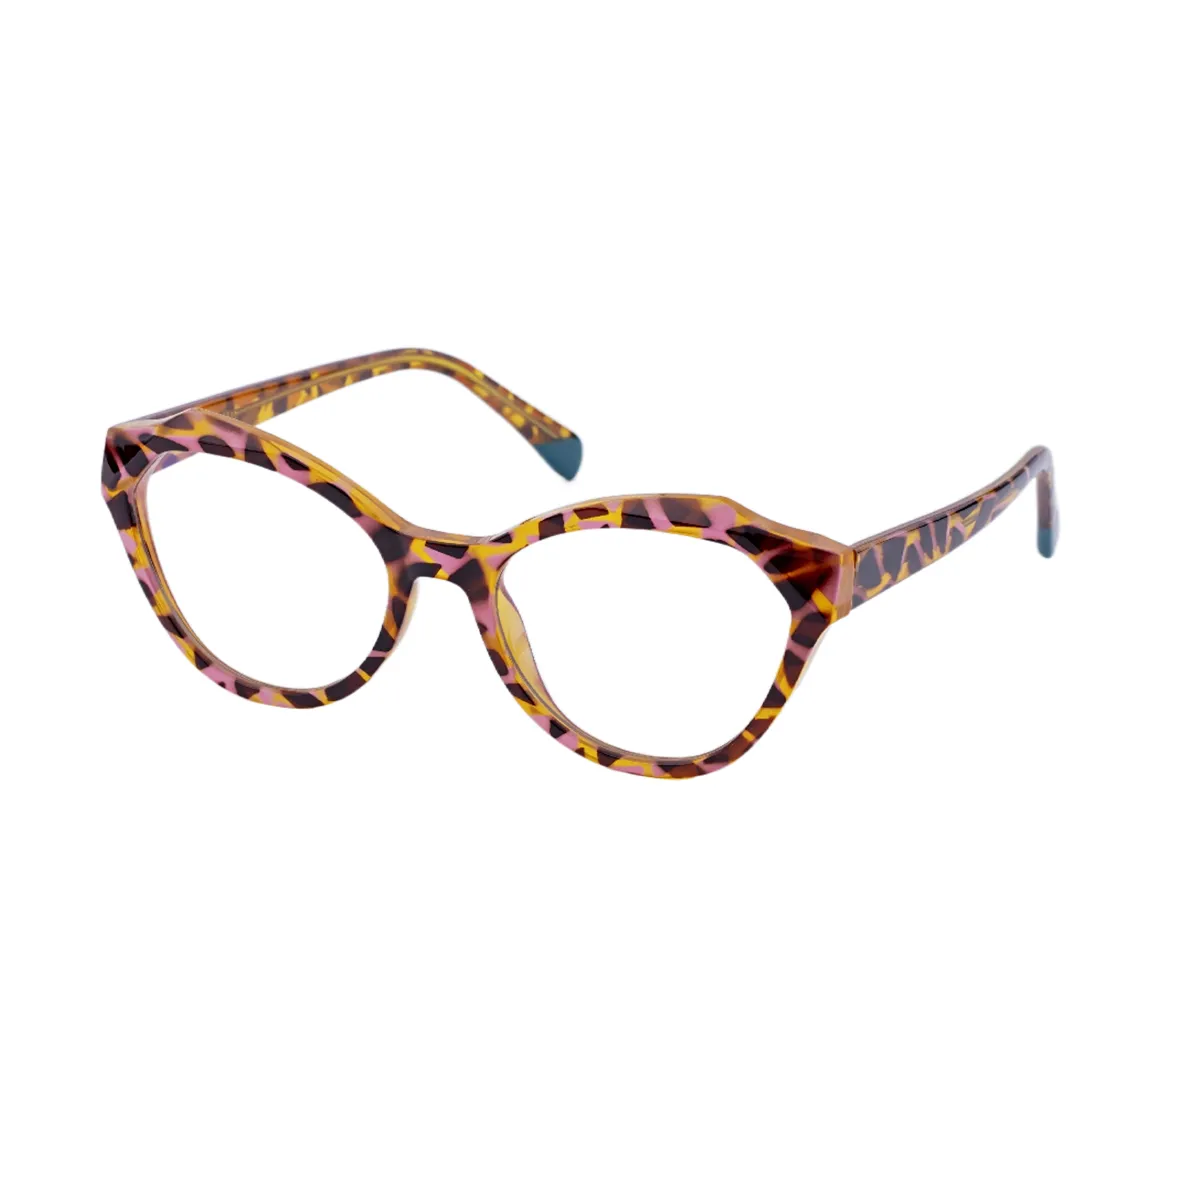 Celeste - Geometric Tortoiseshell Glasses for Women